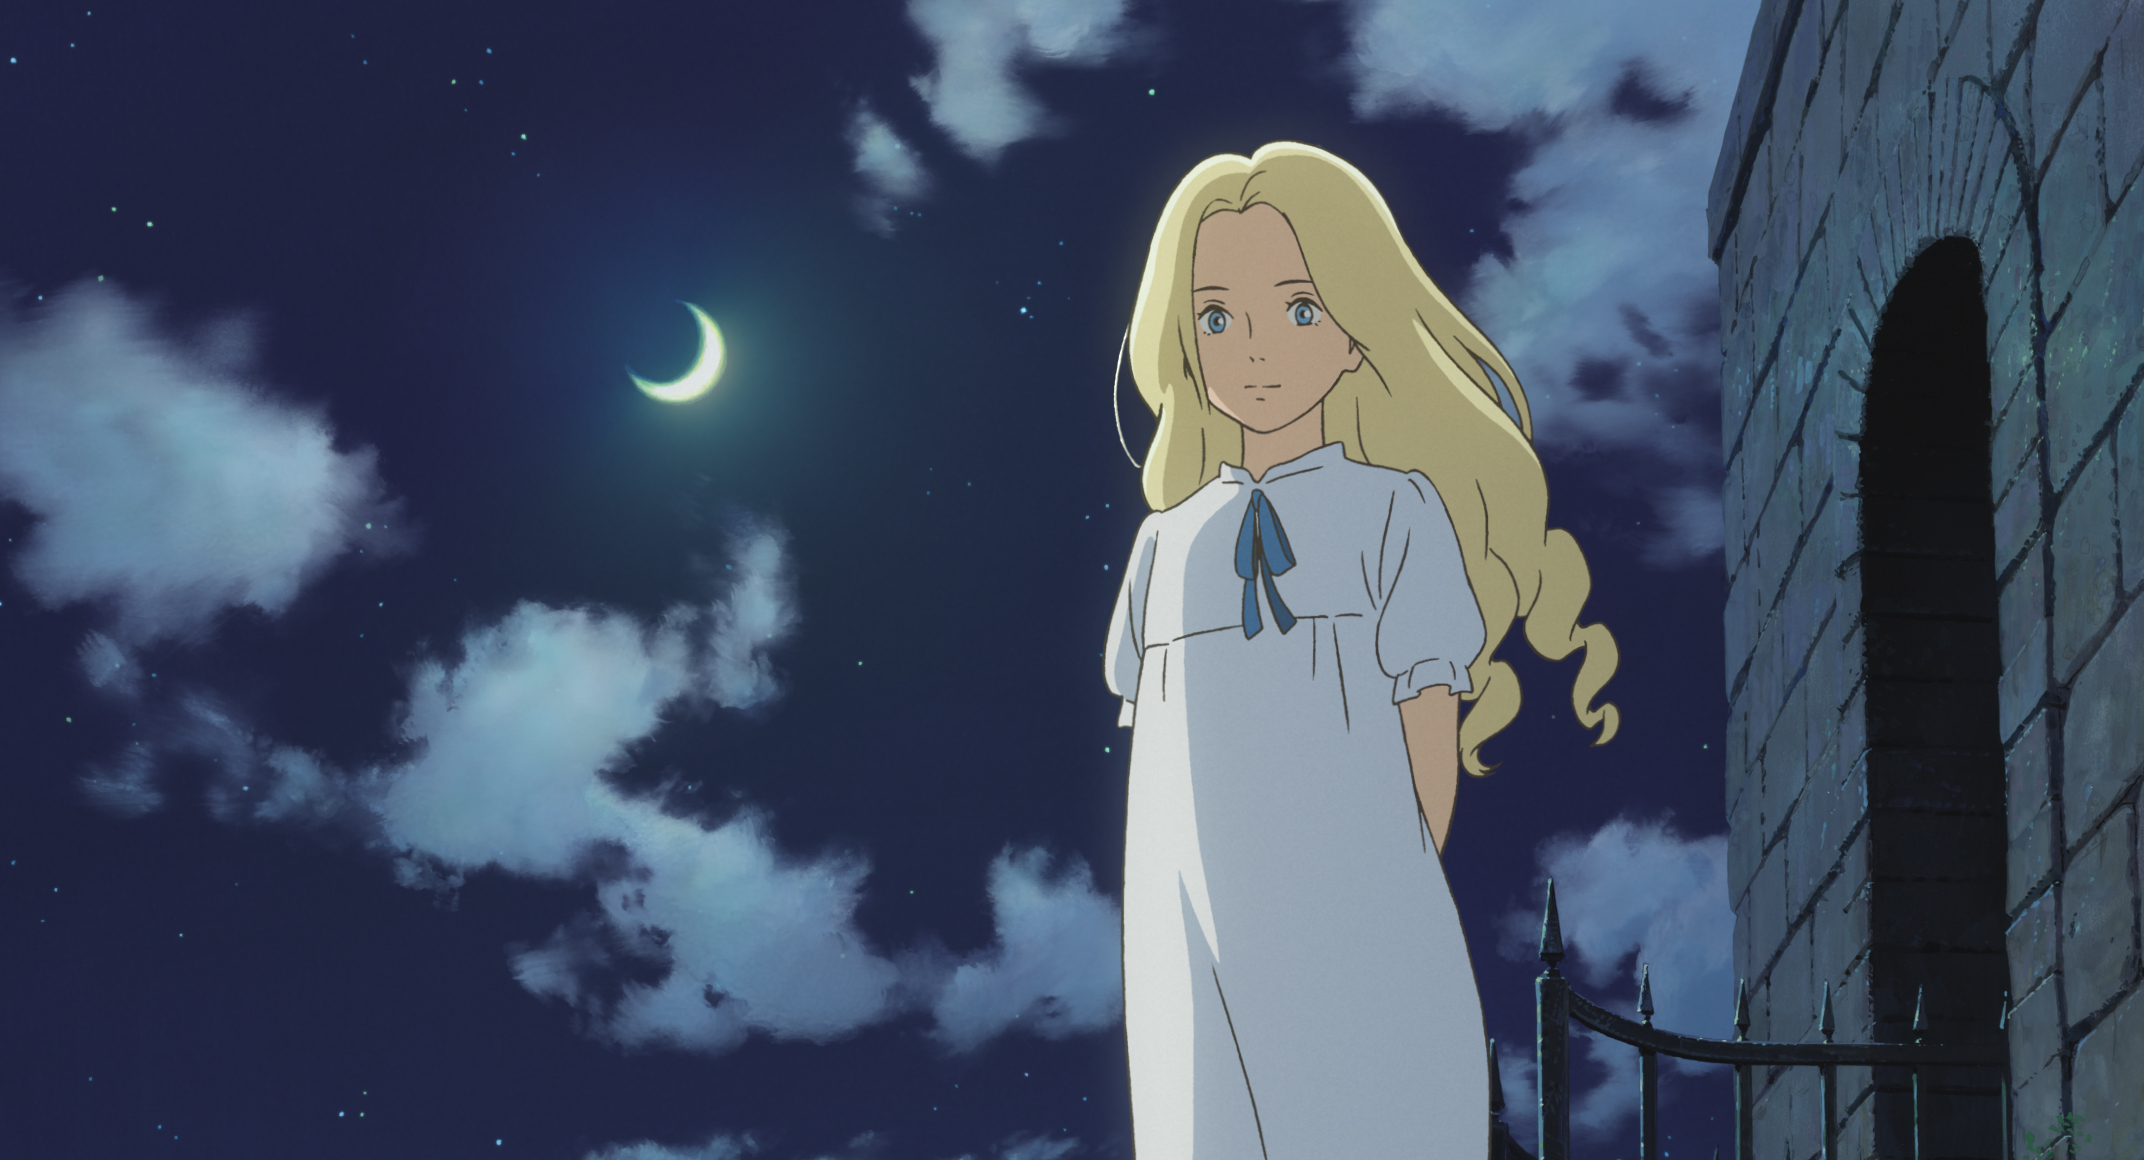 Dipantai yang Tenang Anna Menemukan Teman Misterius, Rekomendasi Anime When Marnie Was There